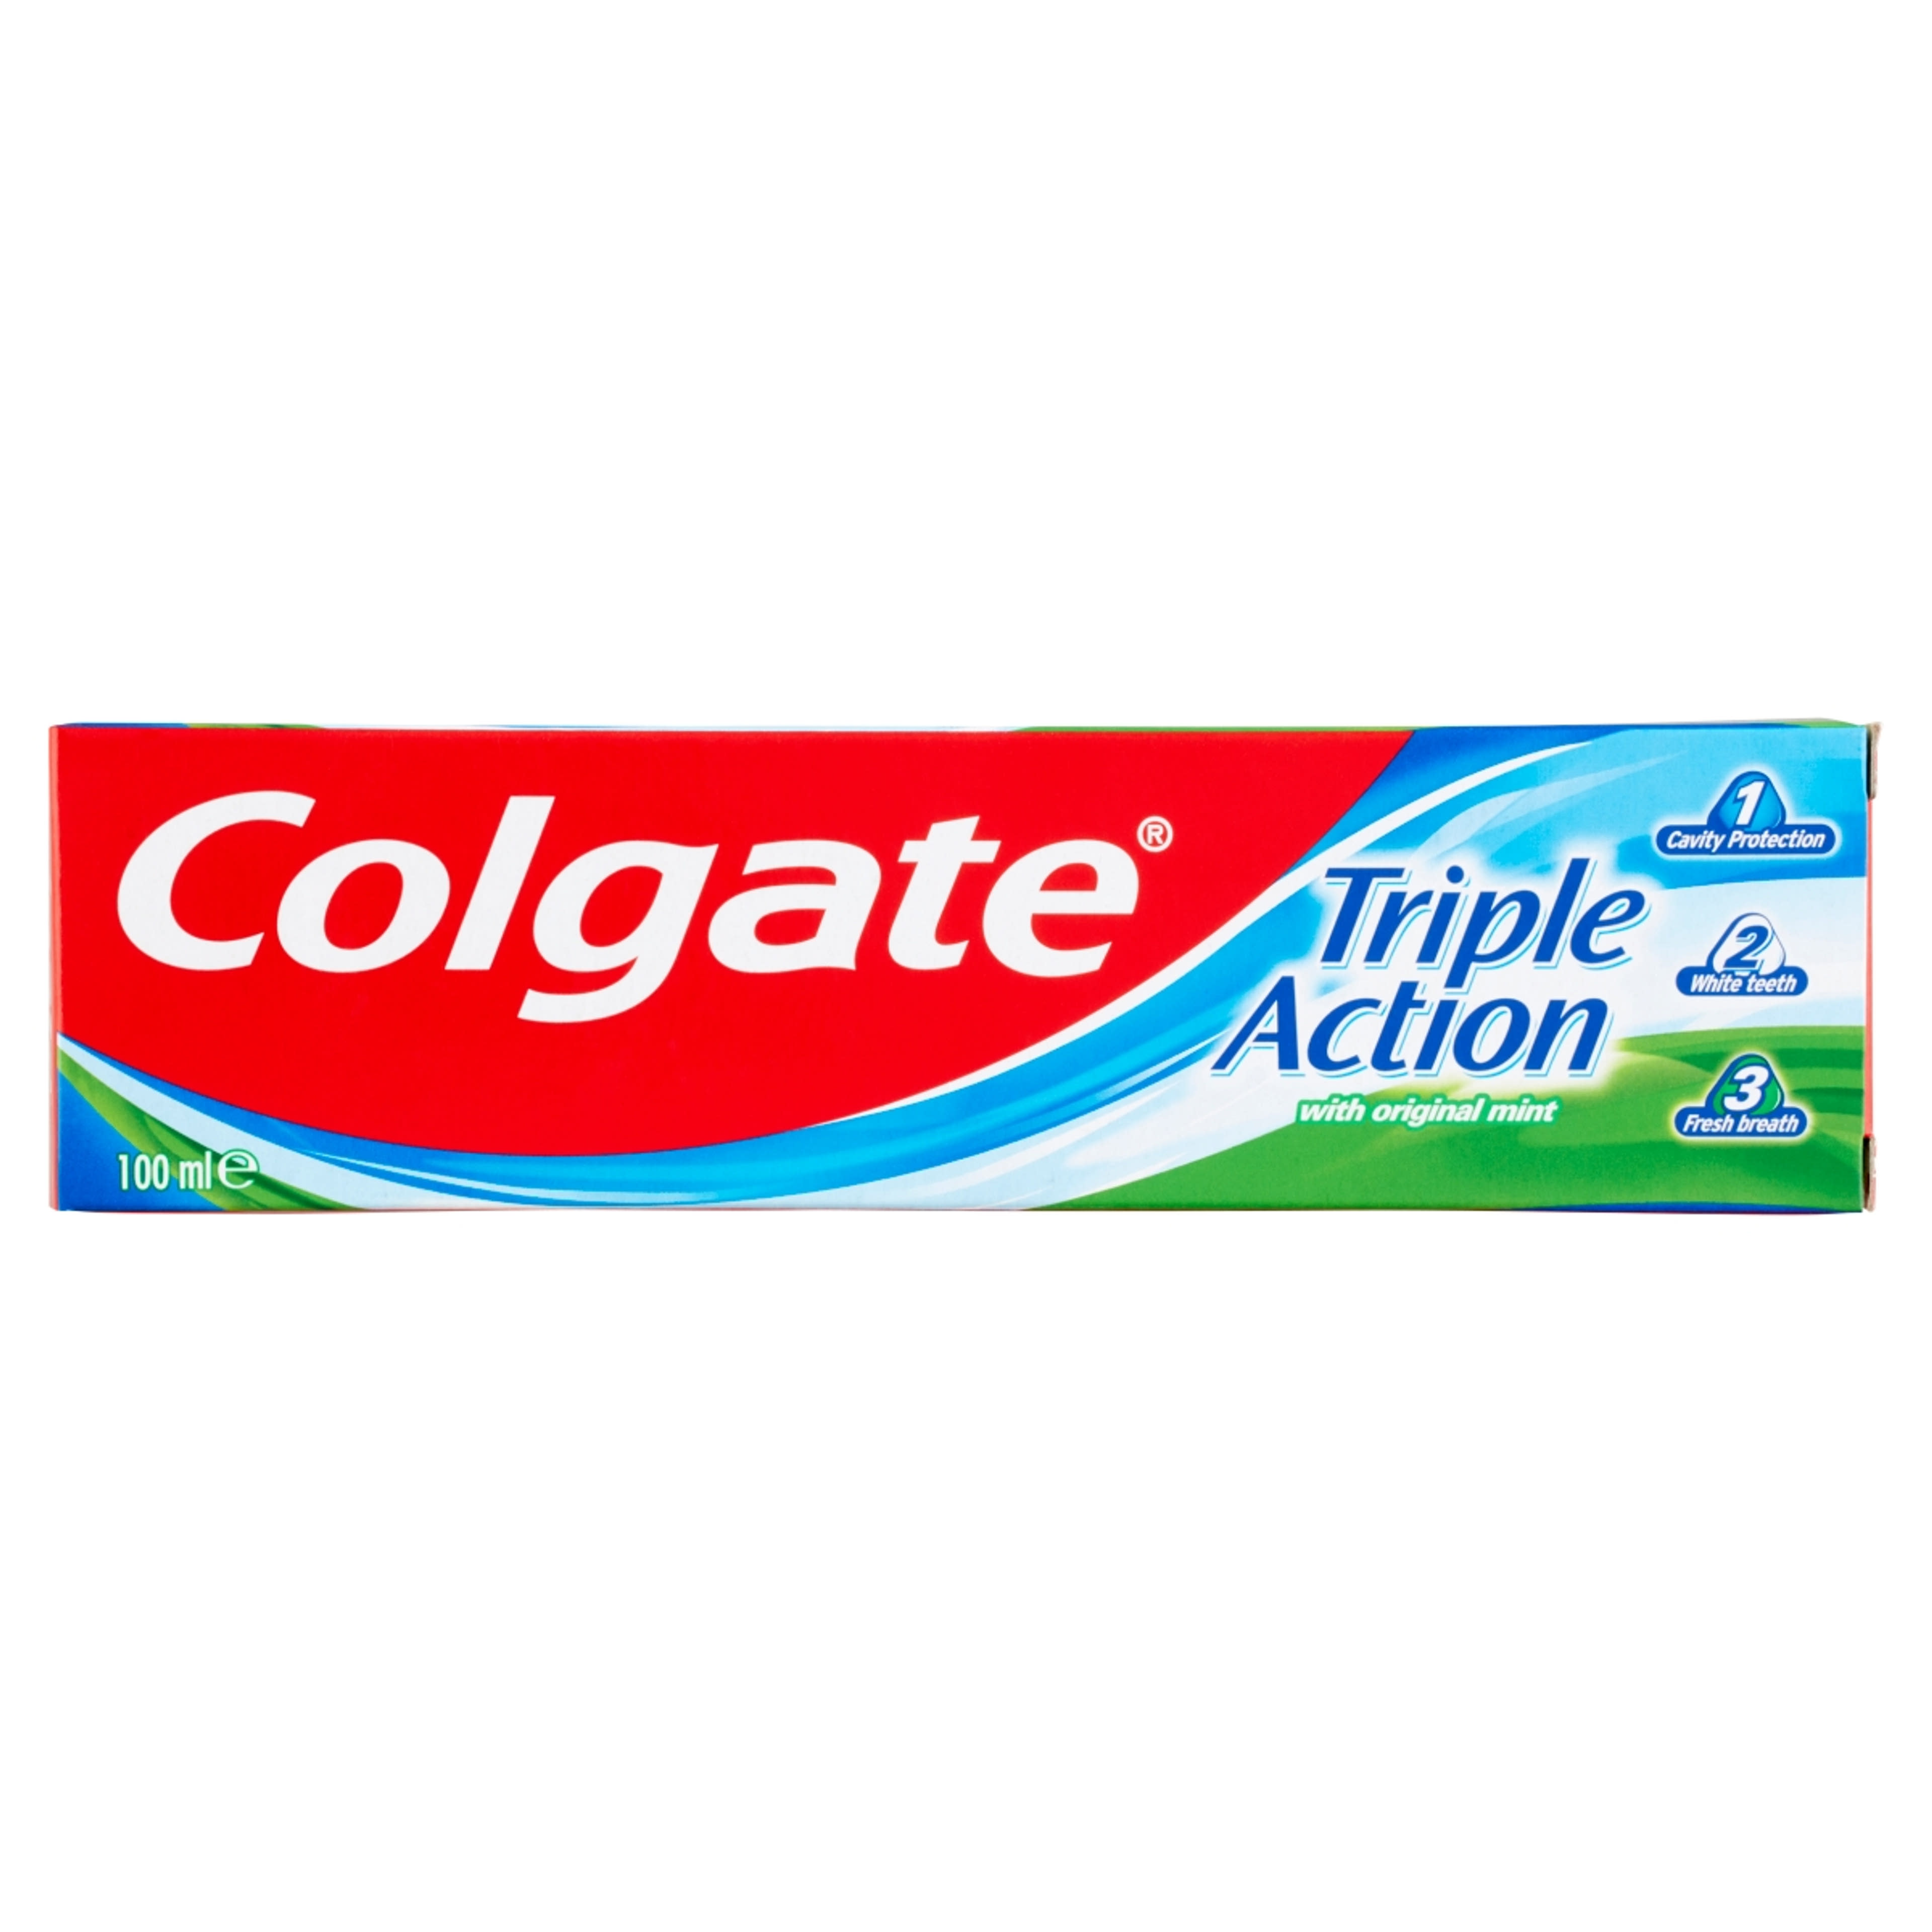 Colgate Triple Action fogkrém - 100 ml-1